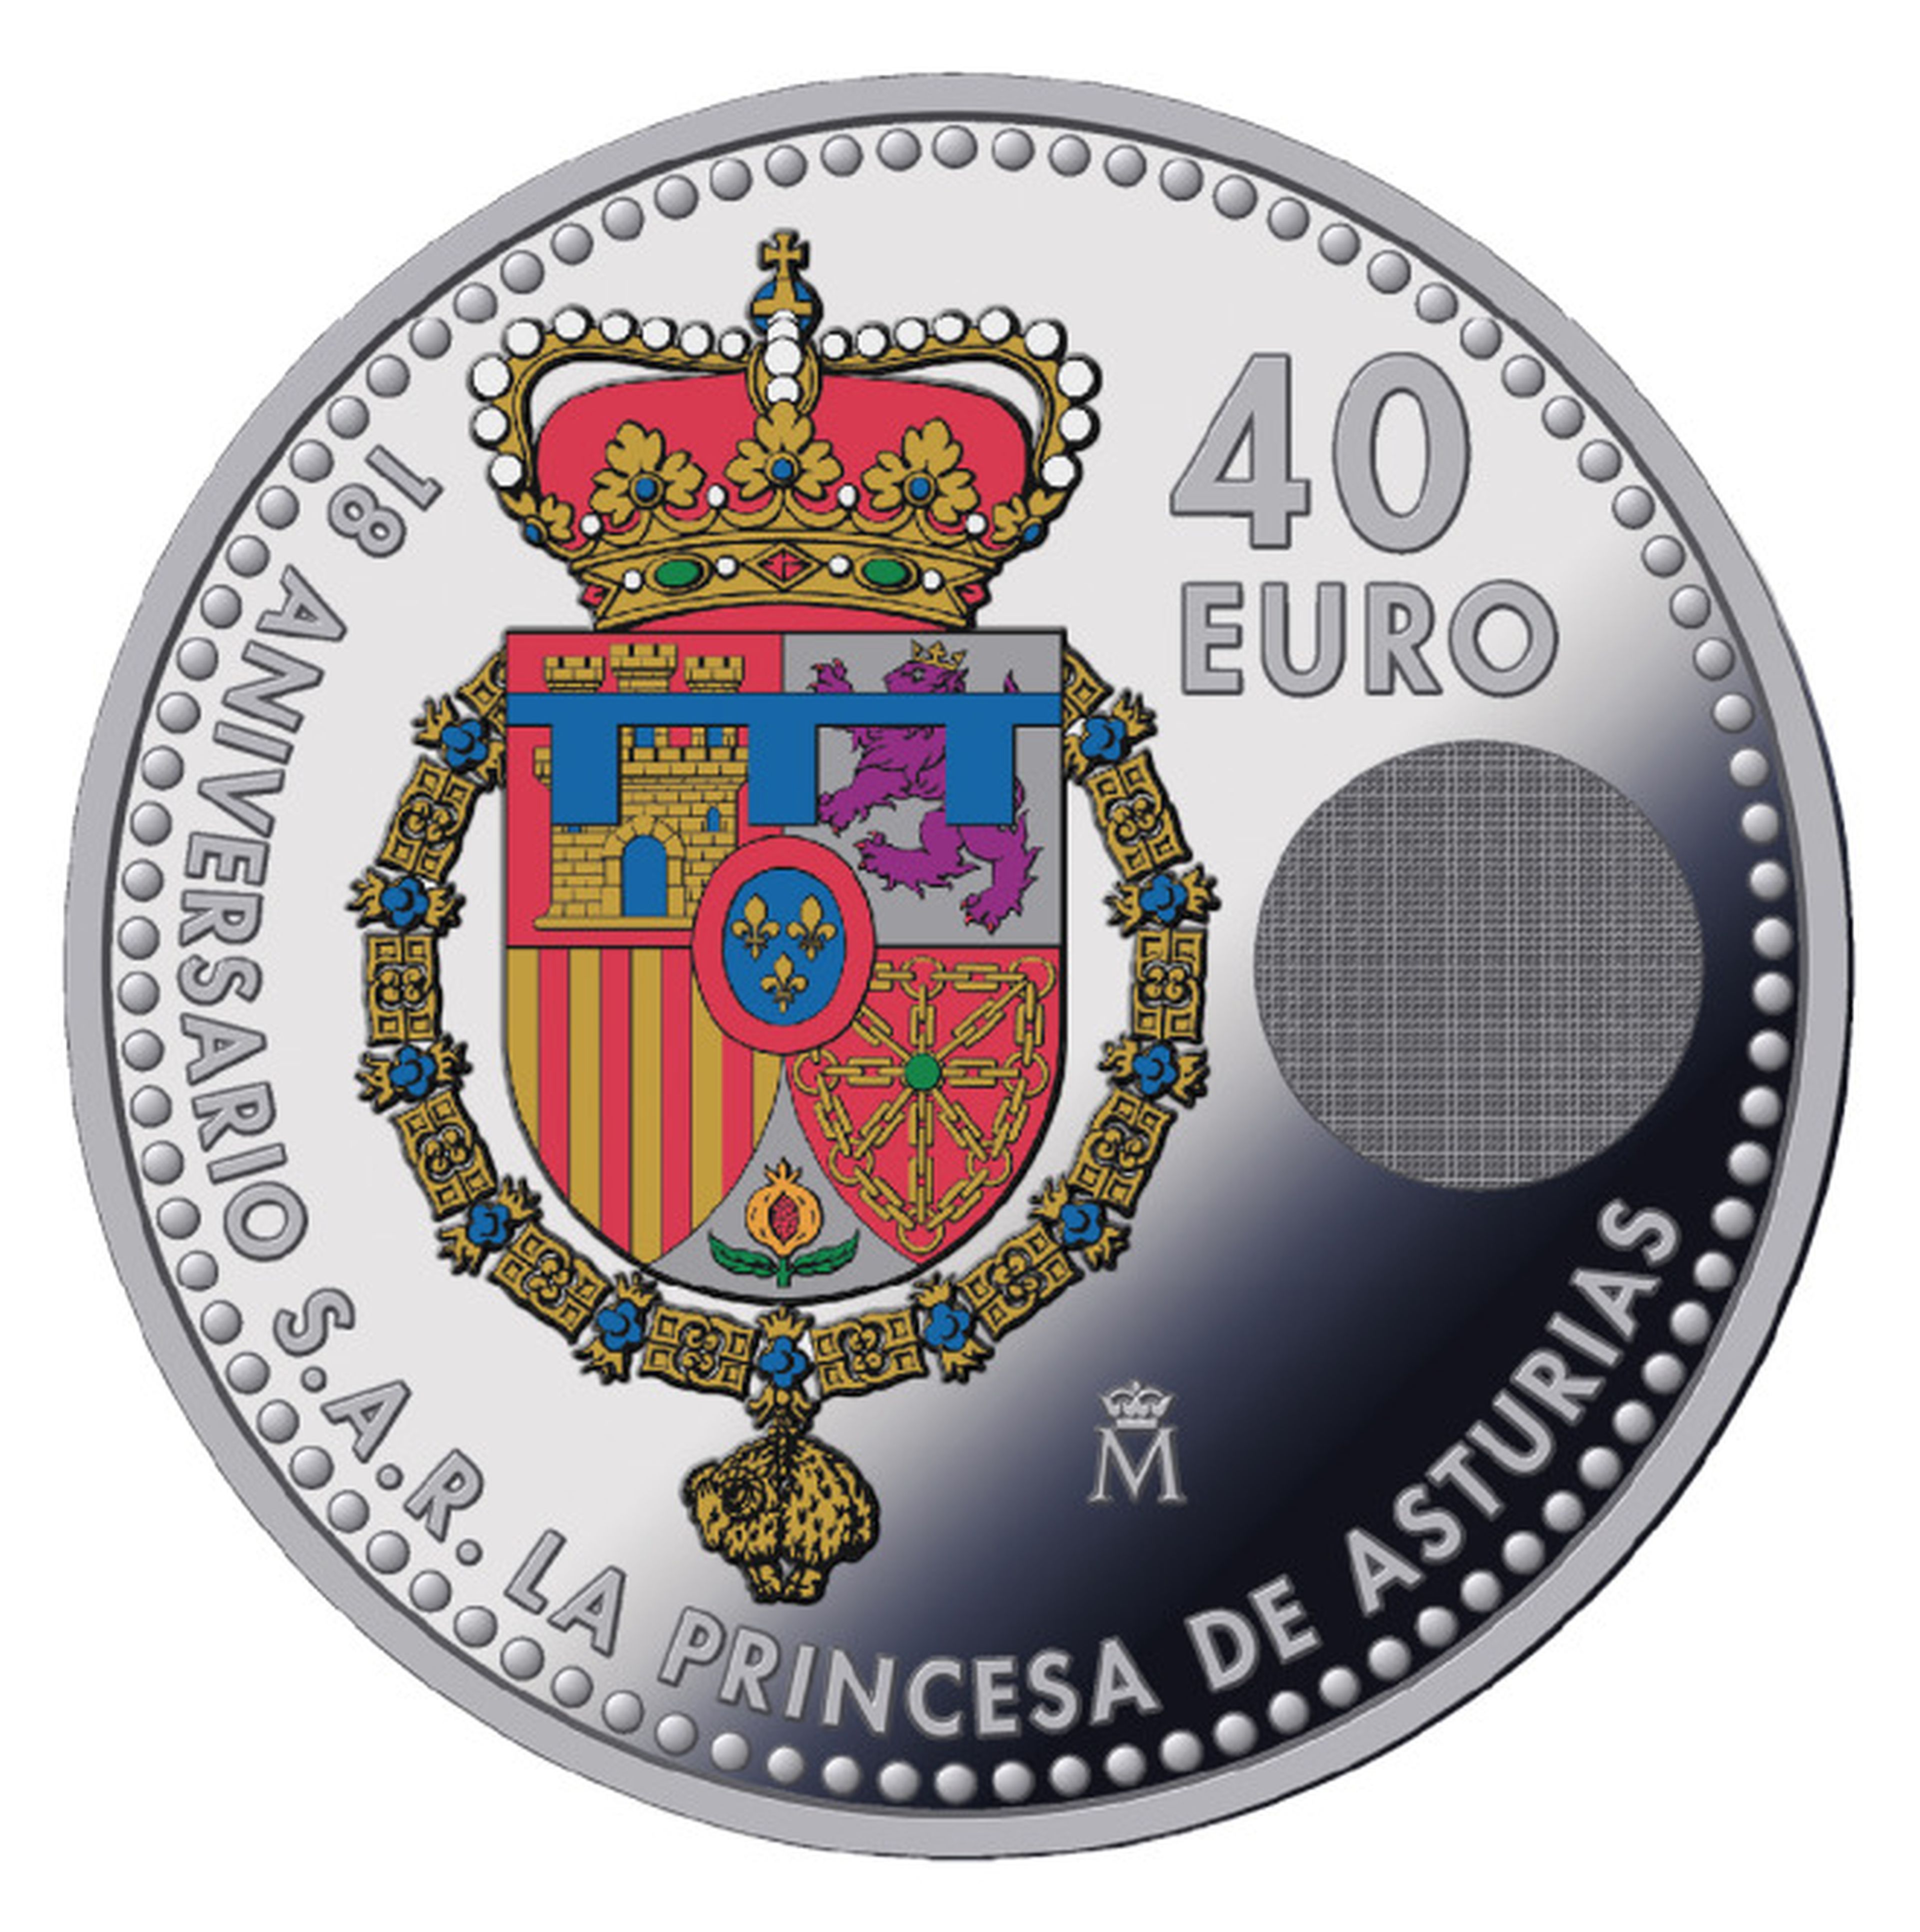 Moneda de la princesa Leonor.